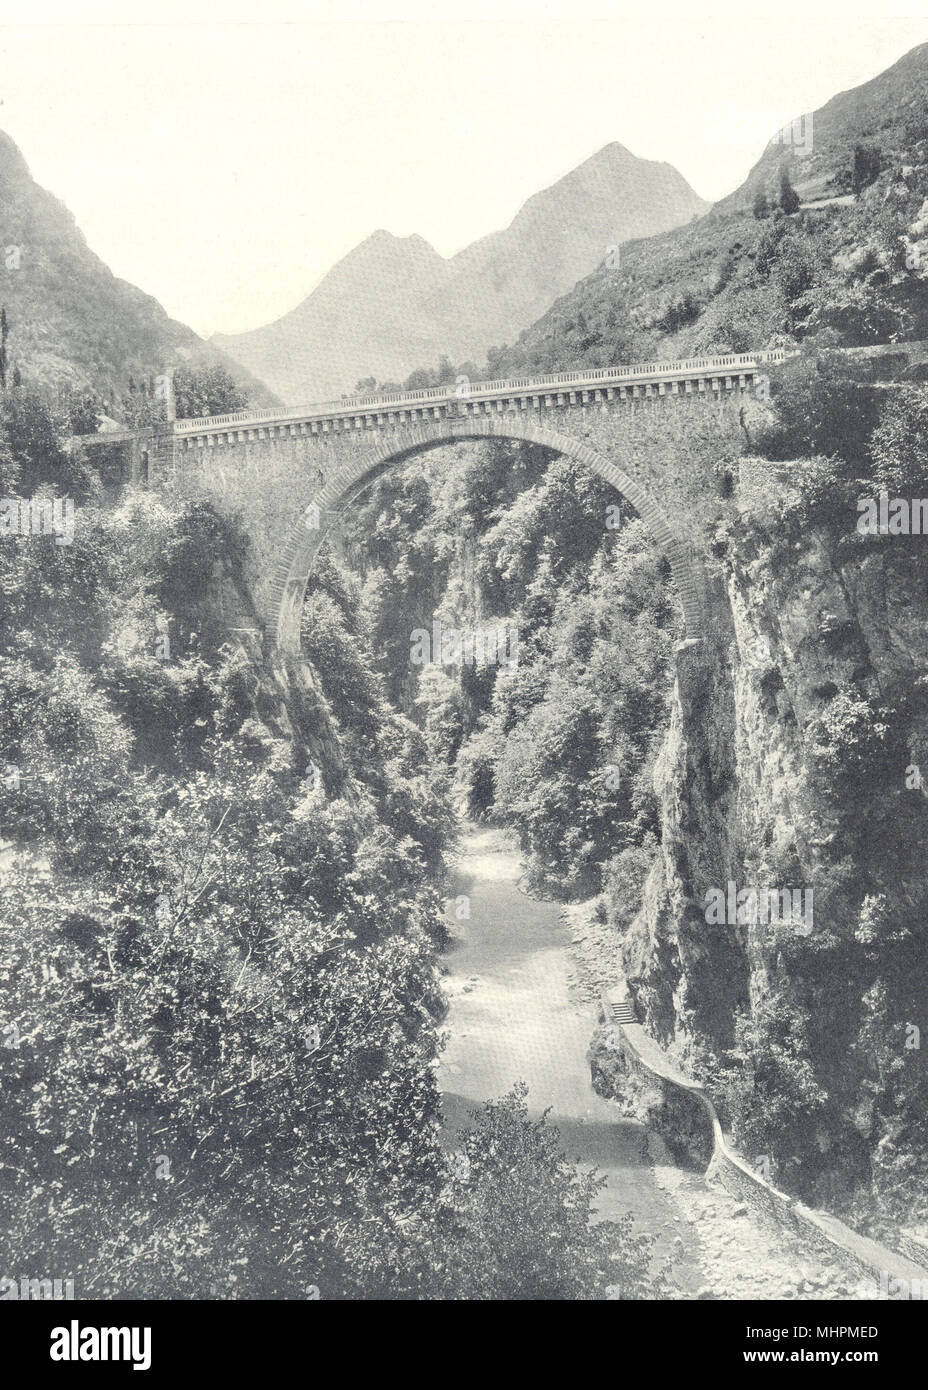 HAUTES-PYRÉNÉES. Saint-Sauveur- Le pont Napoléon 1903 old antique print Stock Photo